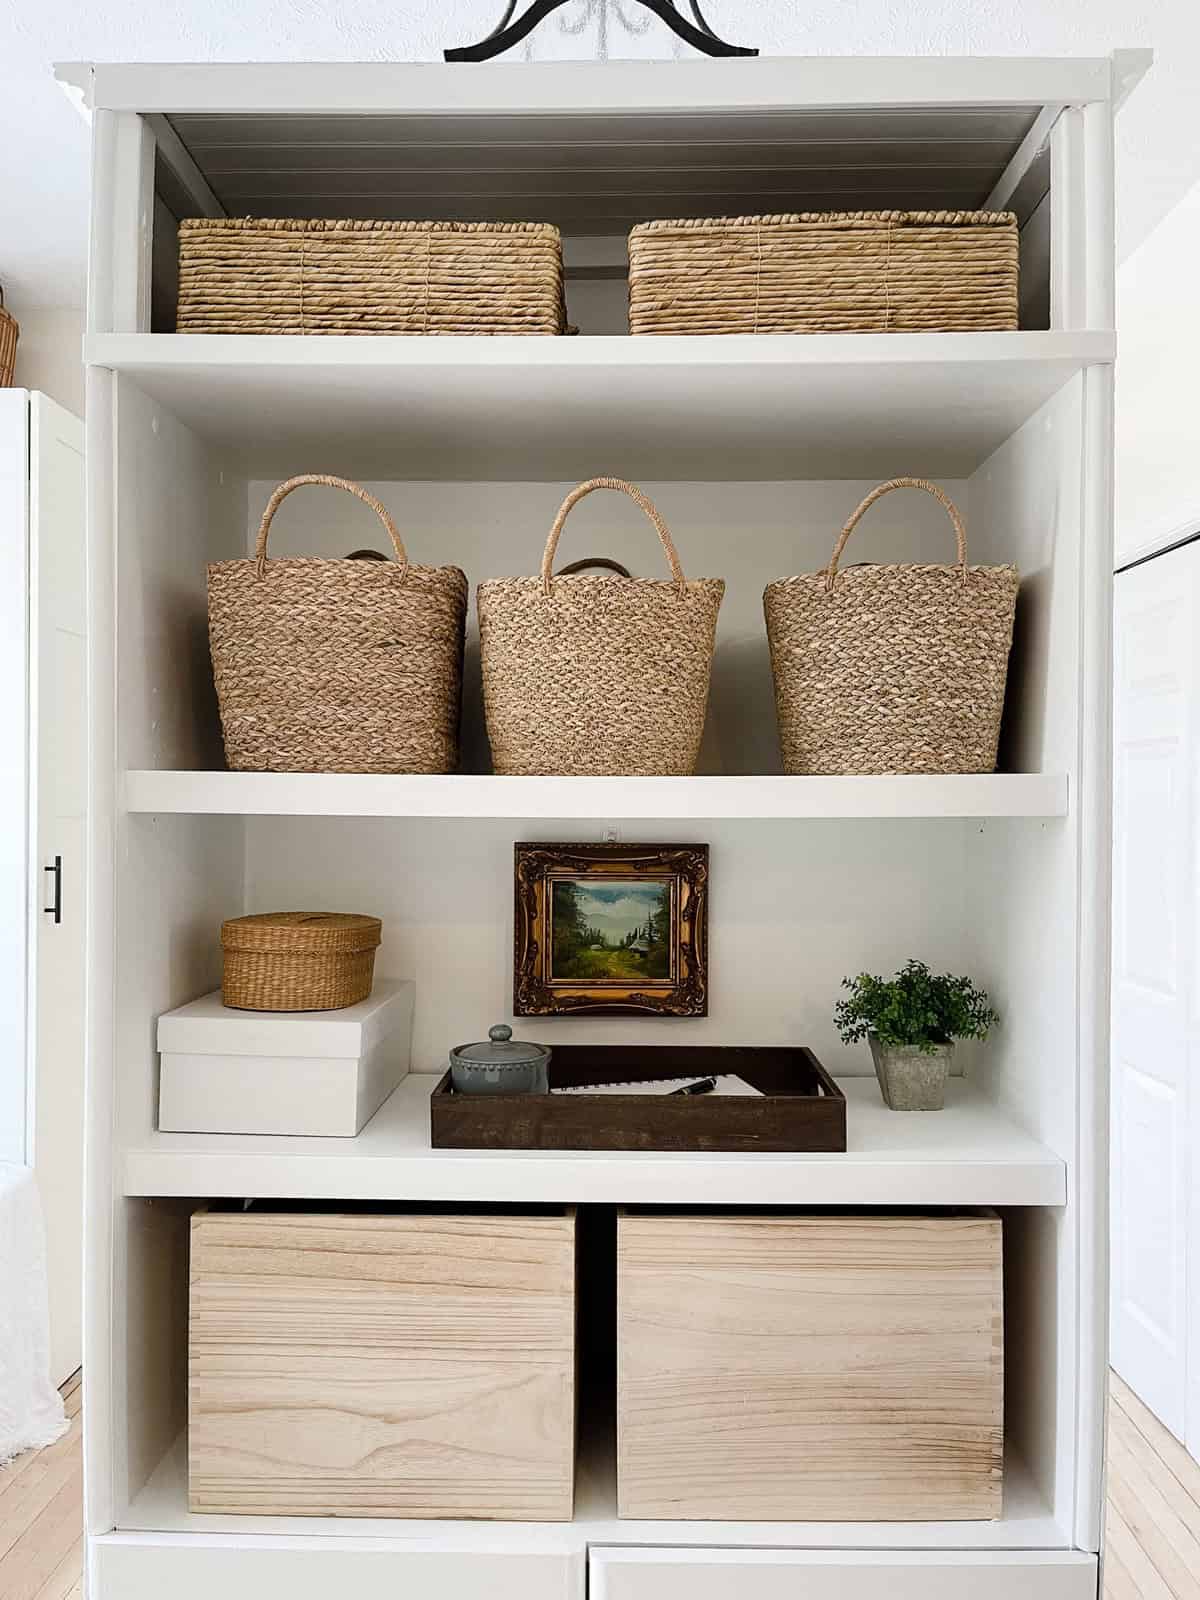 shelf with baskets